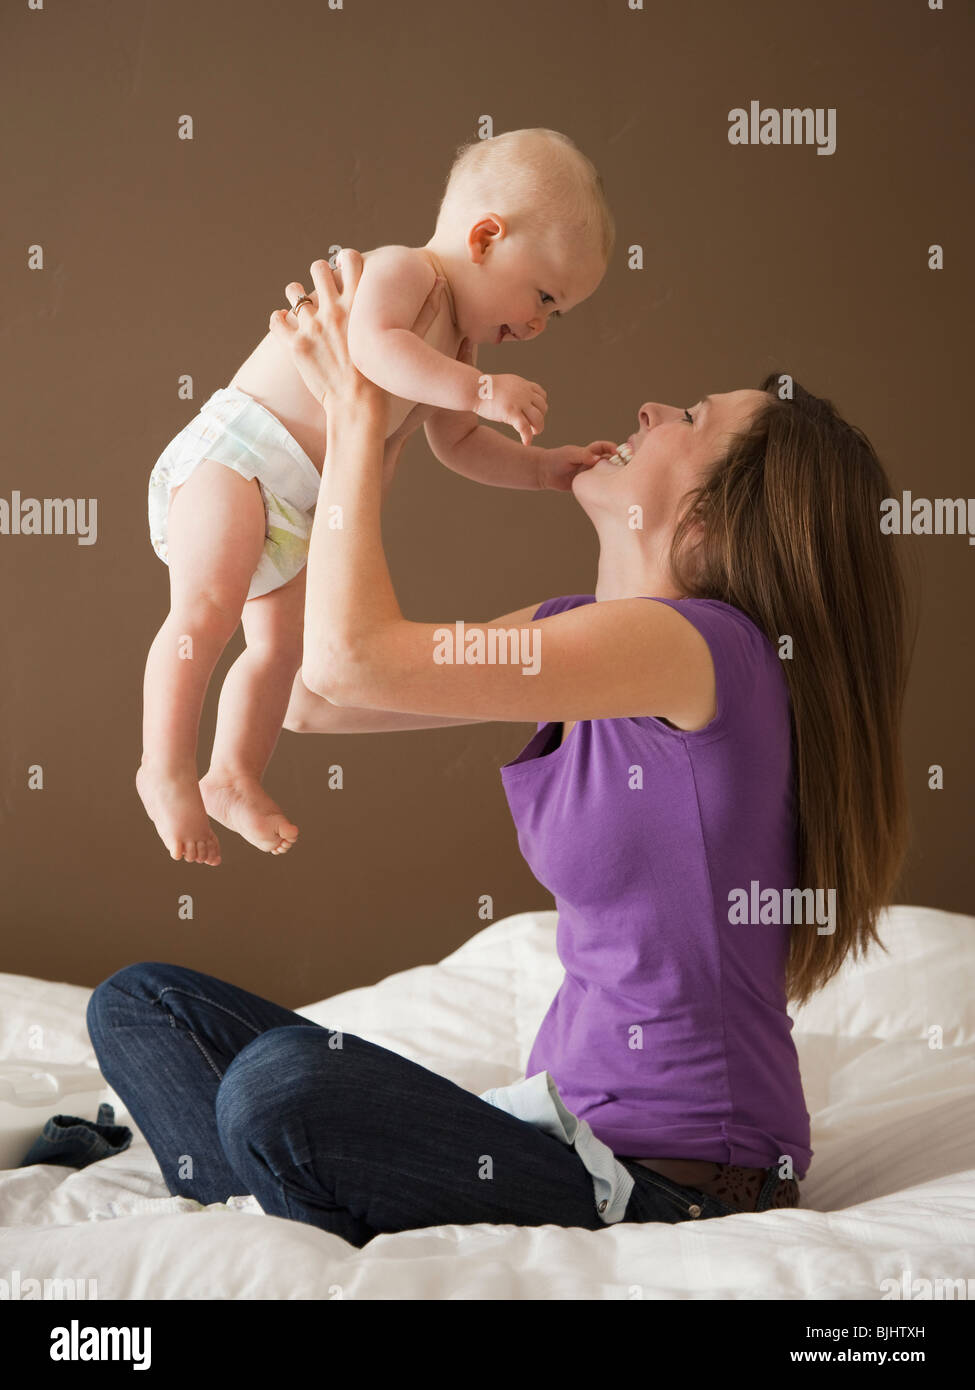 Сильно привязана к маме. Малыш и мама. Привязанность ребенка к матери. Любовь матери к ребенку. Мать и малыш привязанность.